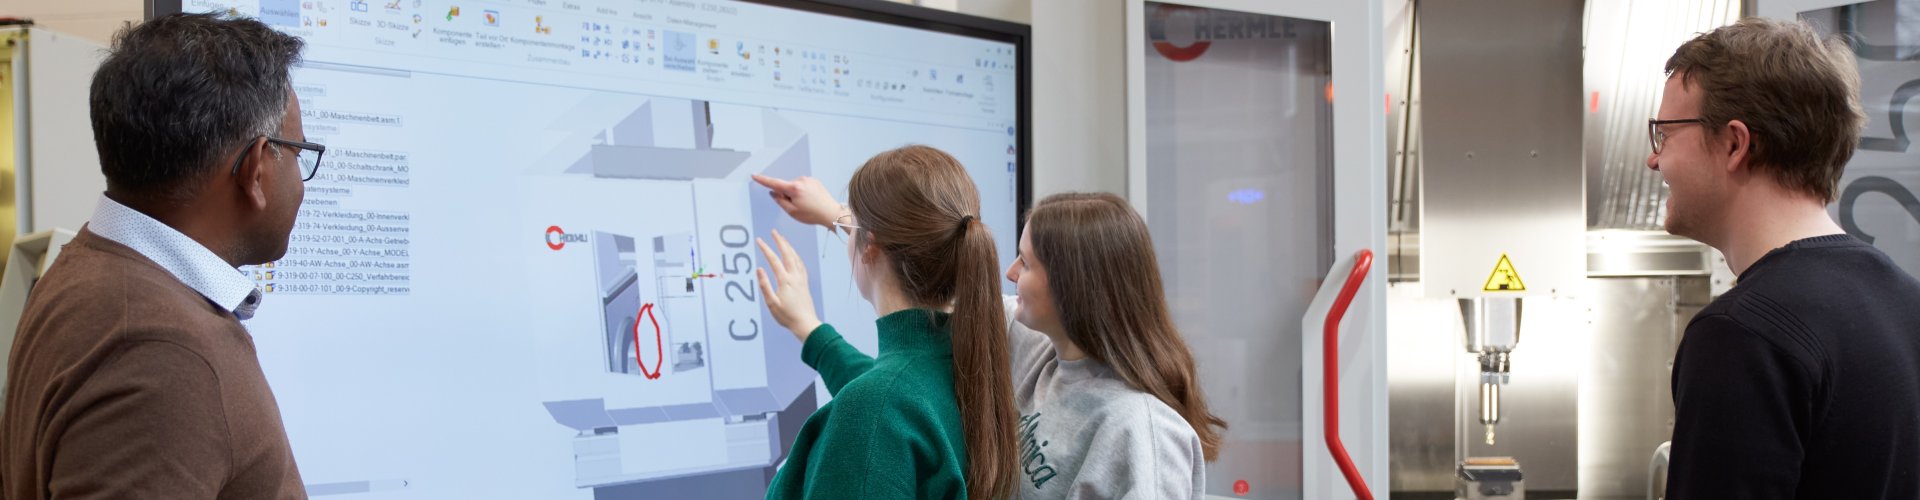 Zwei Studentinnen stehen an einem großen Monitor und zeigen auf die dort dargestellte Grafik mit verschiedenfarbigen eckigen Flächen und der Angabe C250. Ein Dozent steht links, ein Student links neben ihnen und blicken ebenfalls auf den Bildschirm.